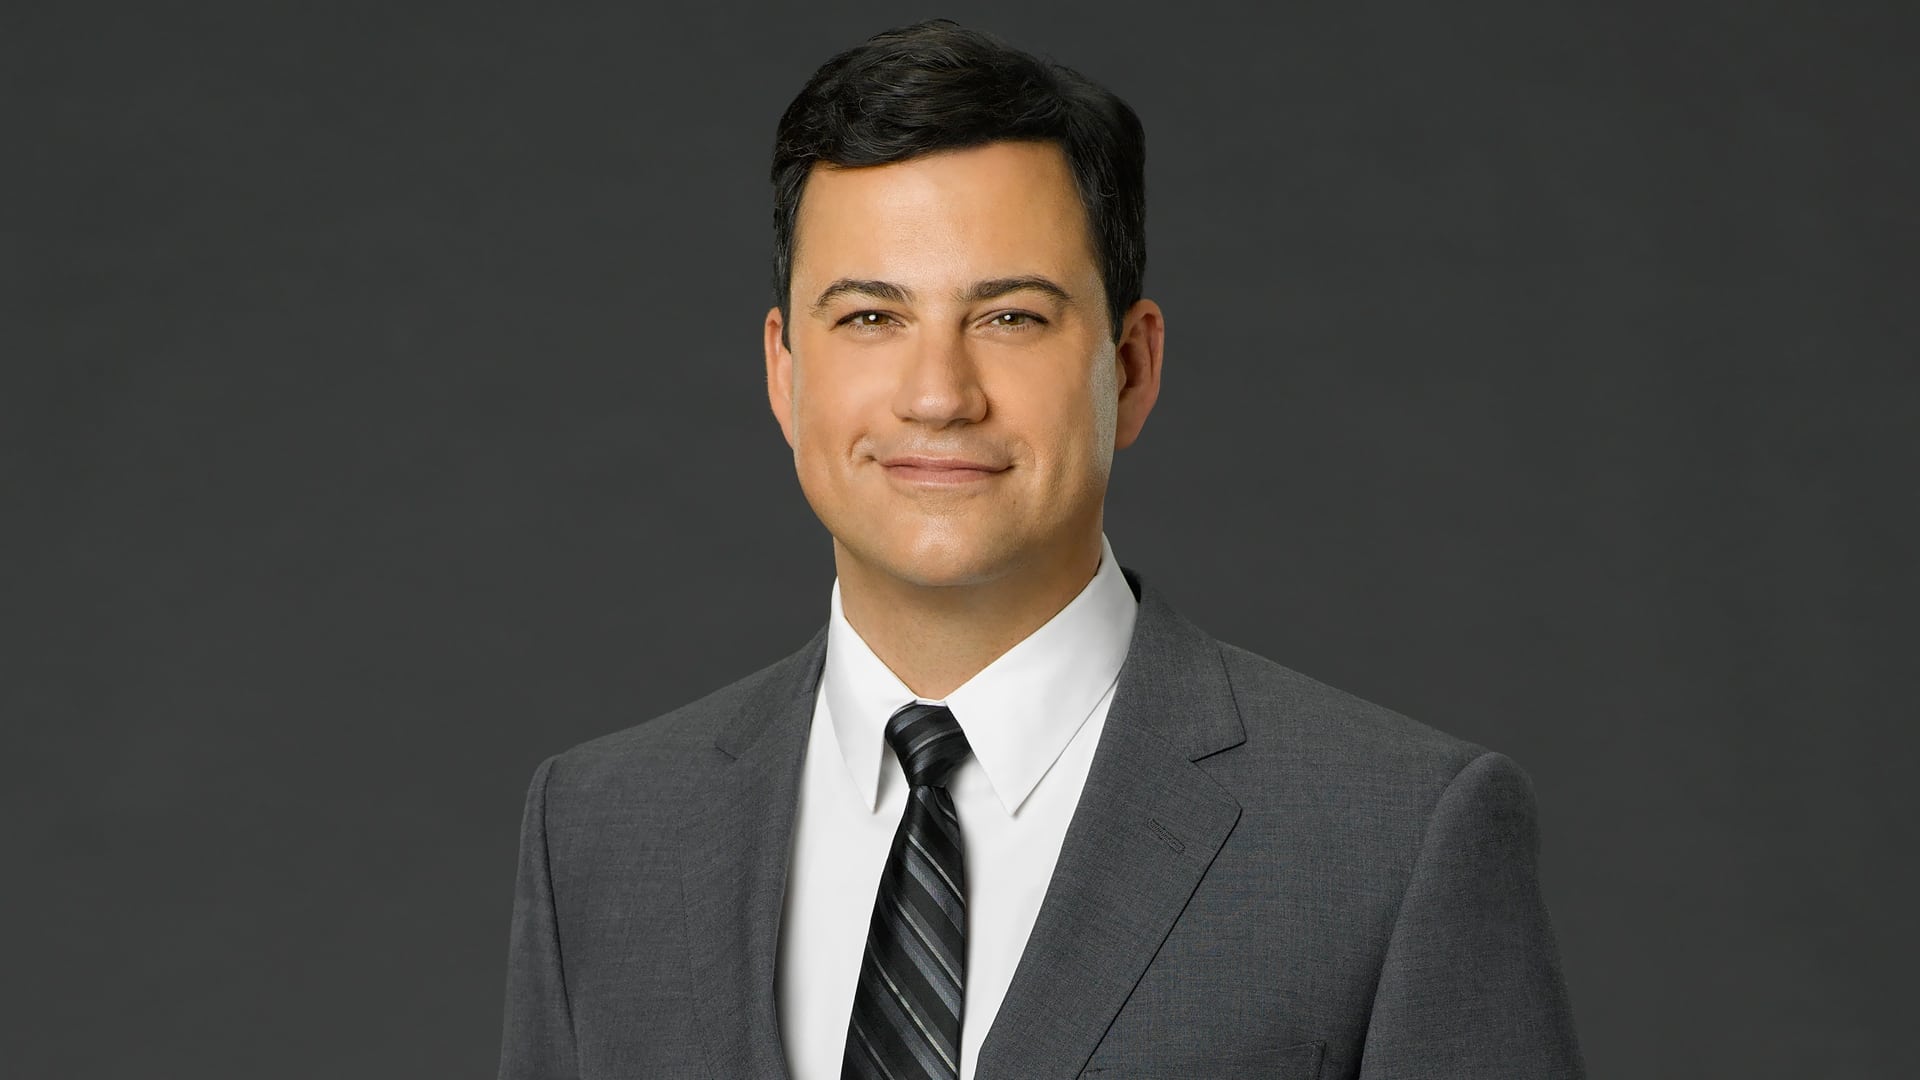 Jimmy Kimmel Live! - Season 22 Episode 33